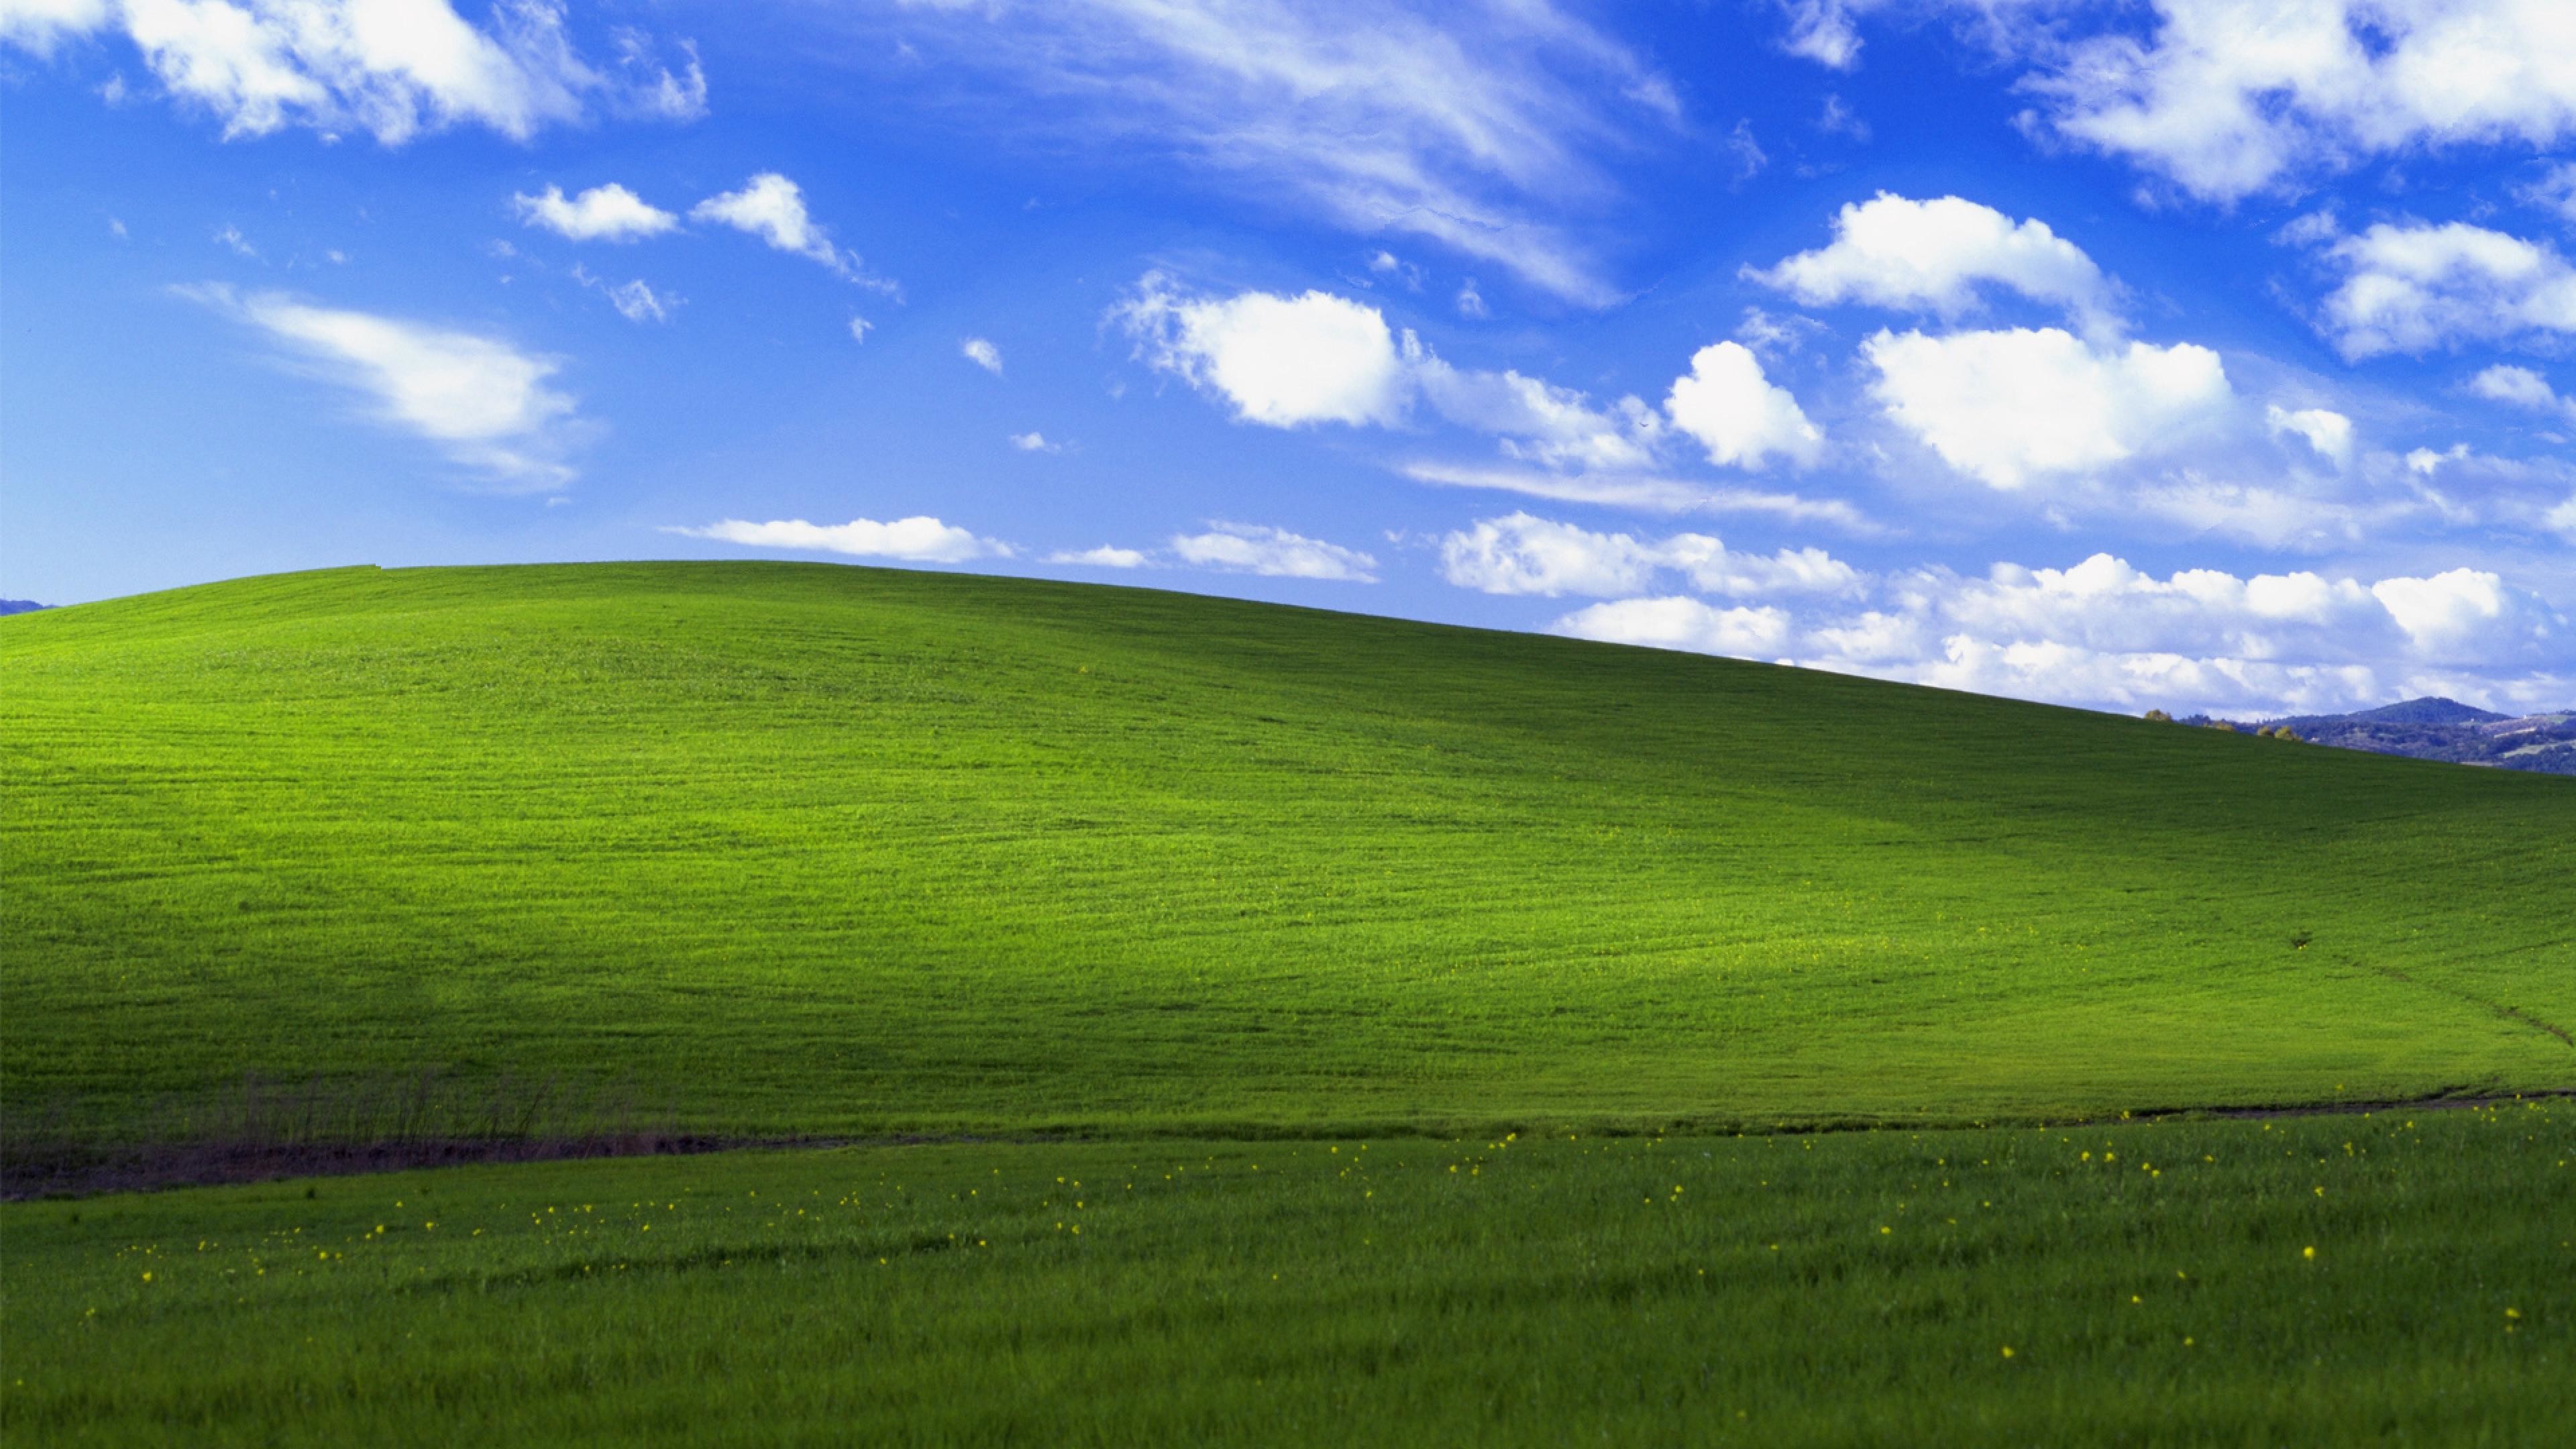 Dù bạn là một Fan của Windows XP hay không, bộ sưu tập hình nền desktop dành cho Windows XP sẽ khiến bạn thích thú. Với một loạt các hình ảnh nền tuyệt đẹp về mặt biển, núi rừng, thành phố,... cho bạn lựa chọn, hãy truy cập vào trang web để khám phá và tải về những hình ảnh mà bạn yêu thích.